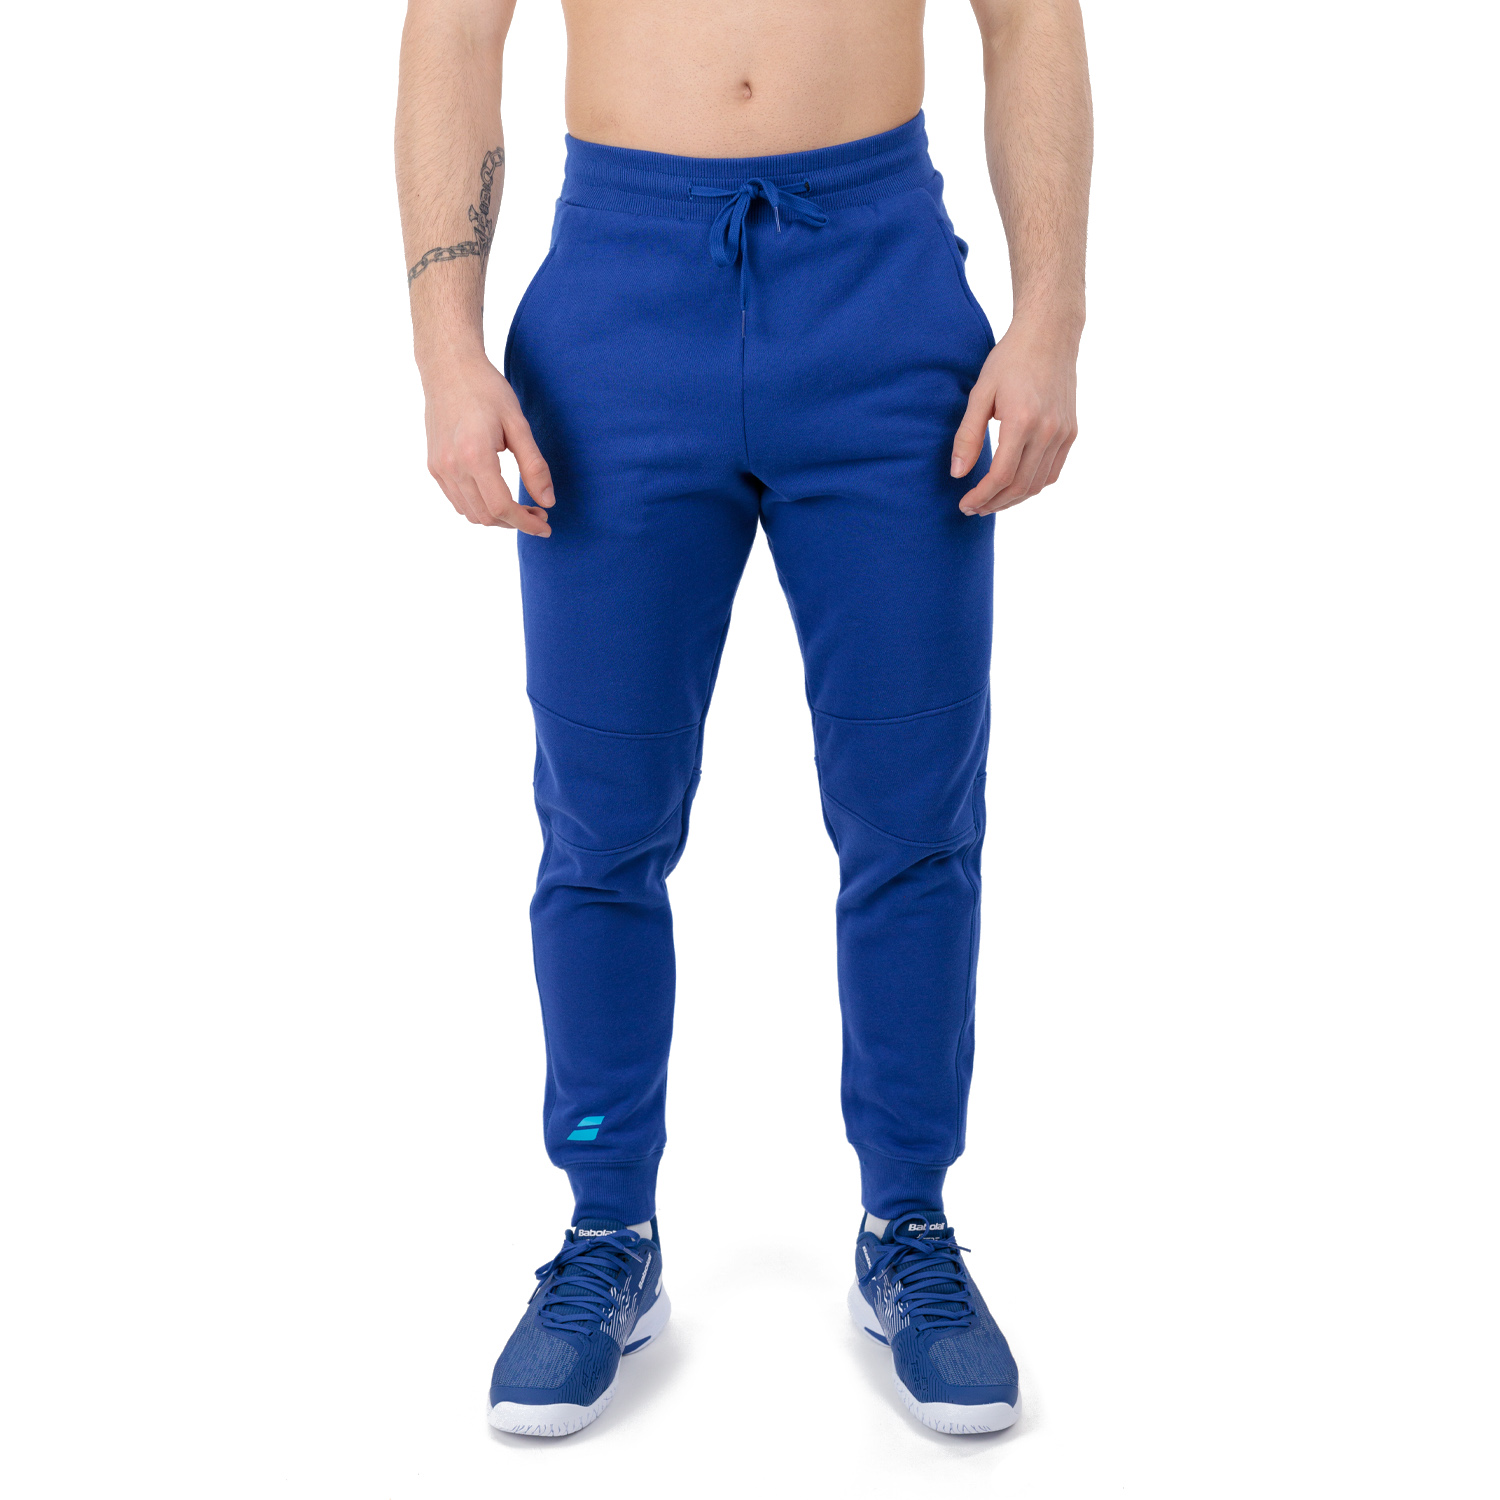 Babolat Exercise Pantalones - Sodalite Blue